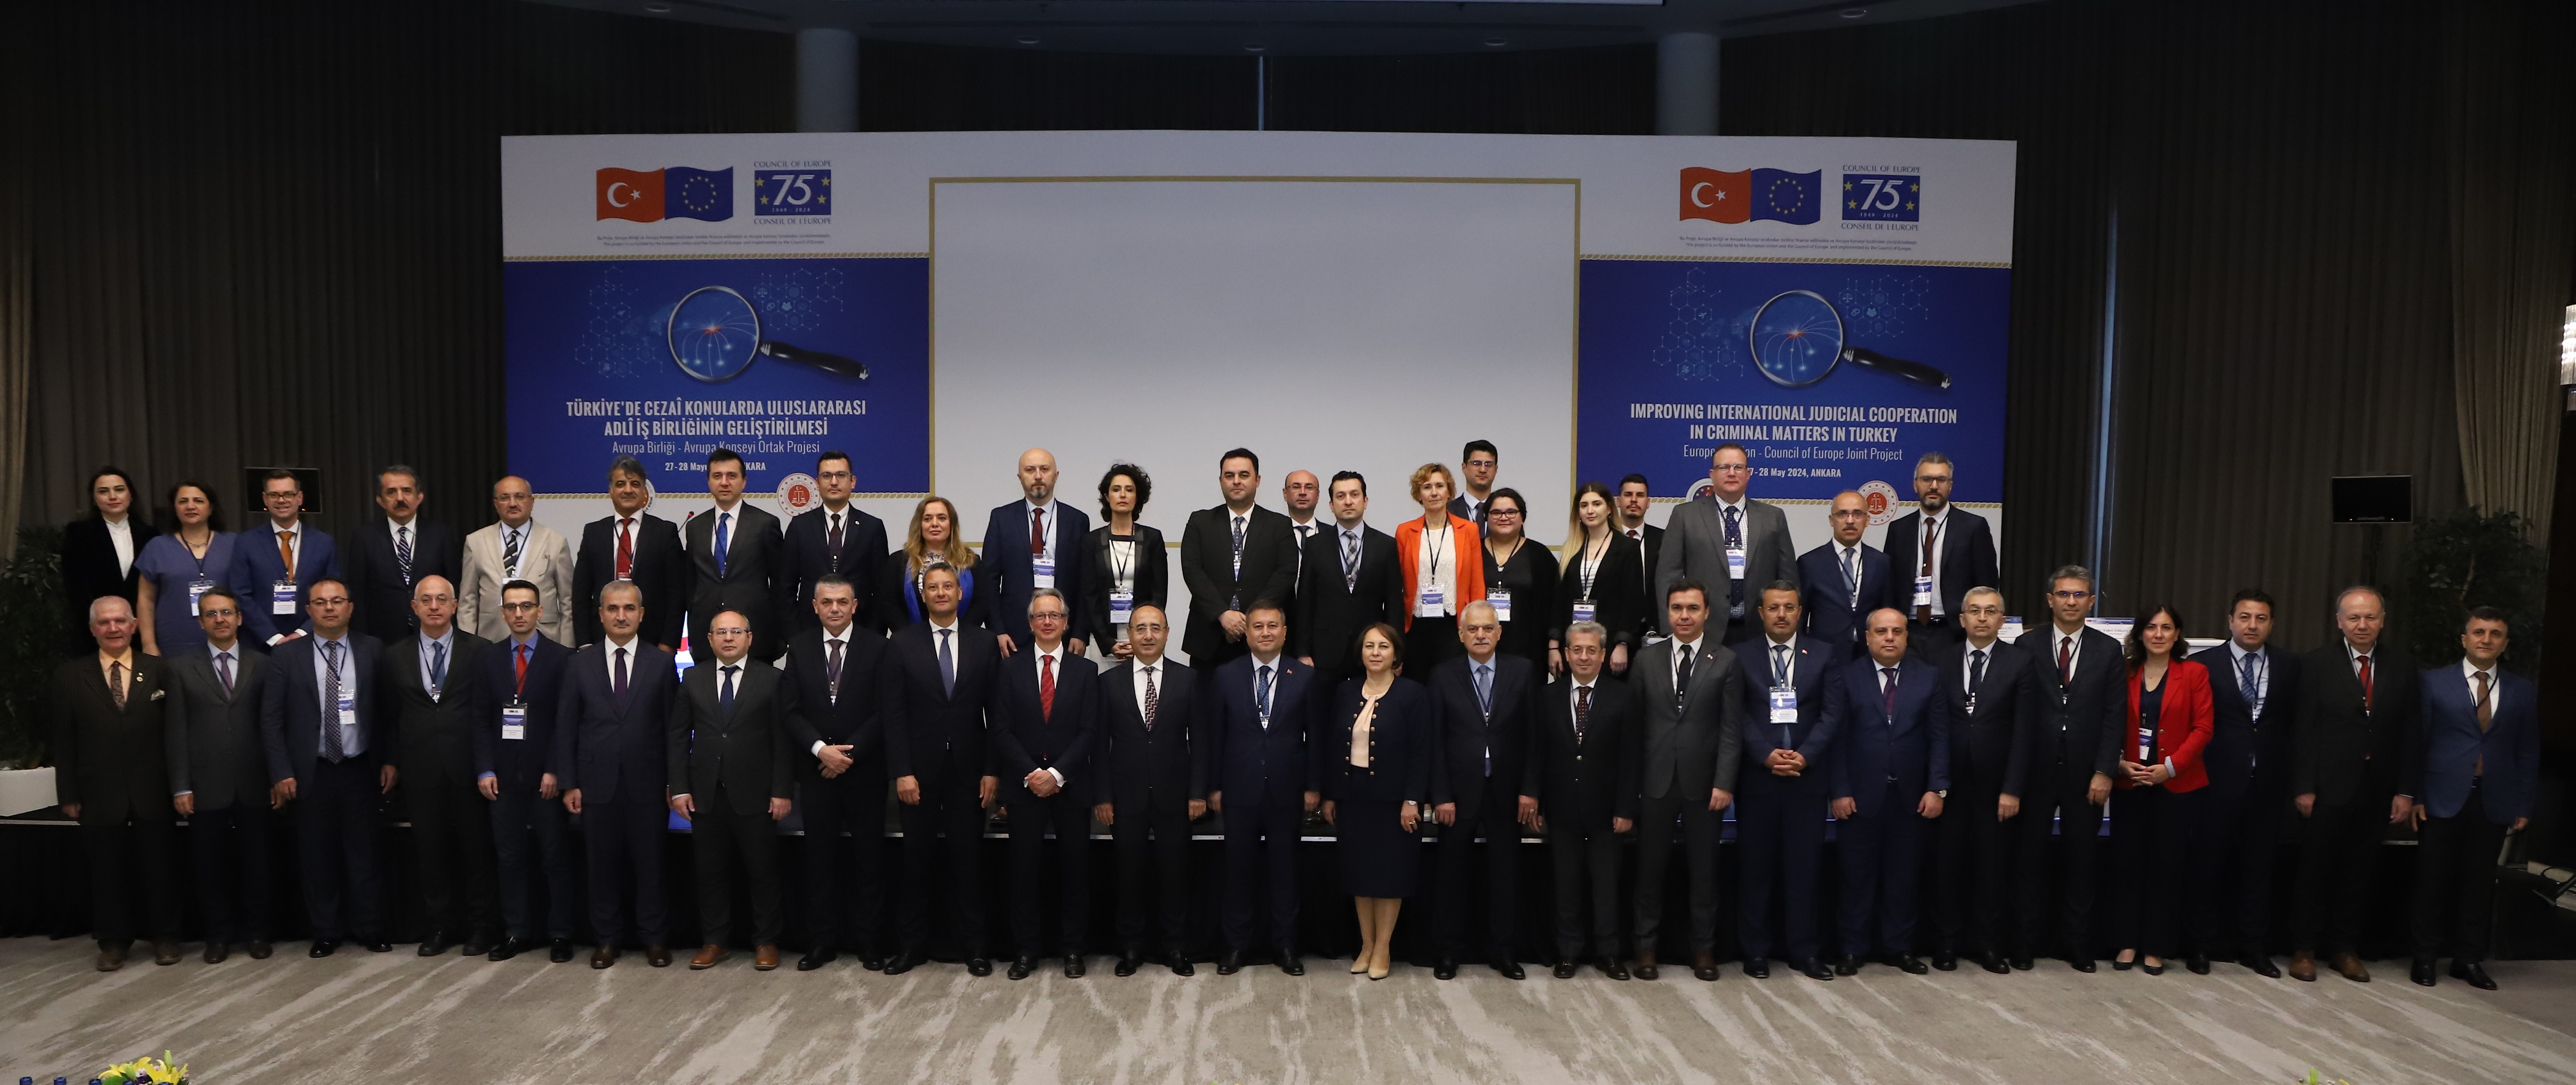 Türkiye hosts conference on international judicial cooperation in criminal matters